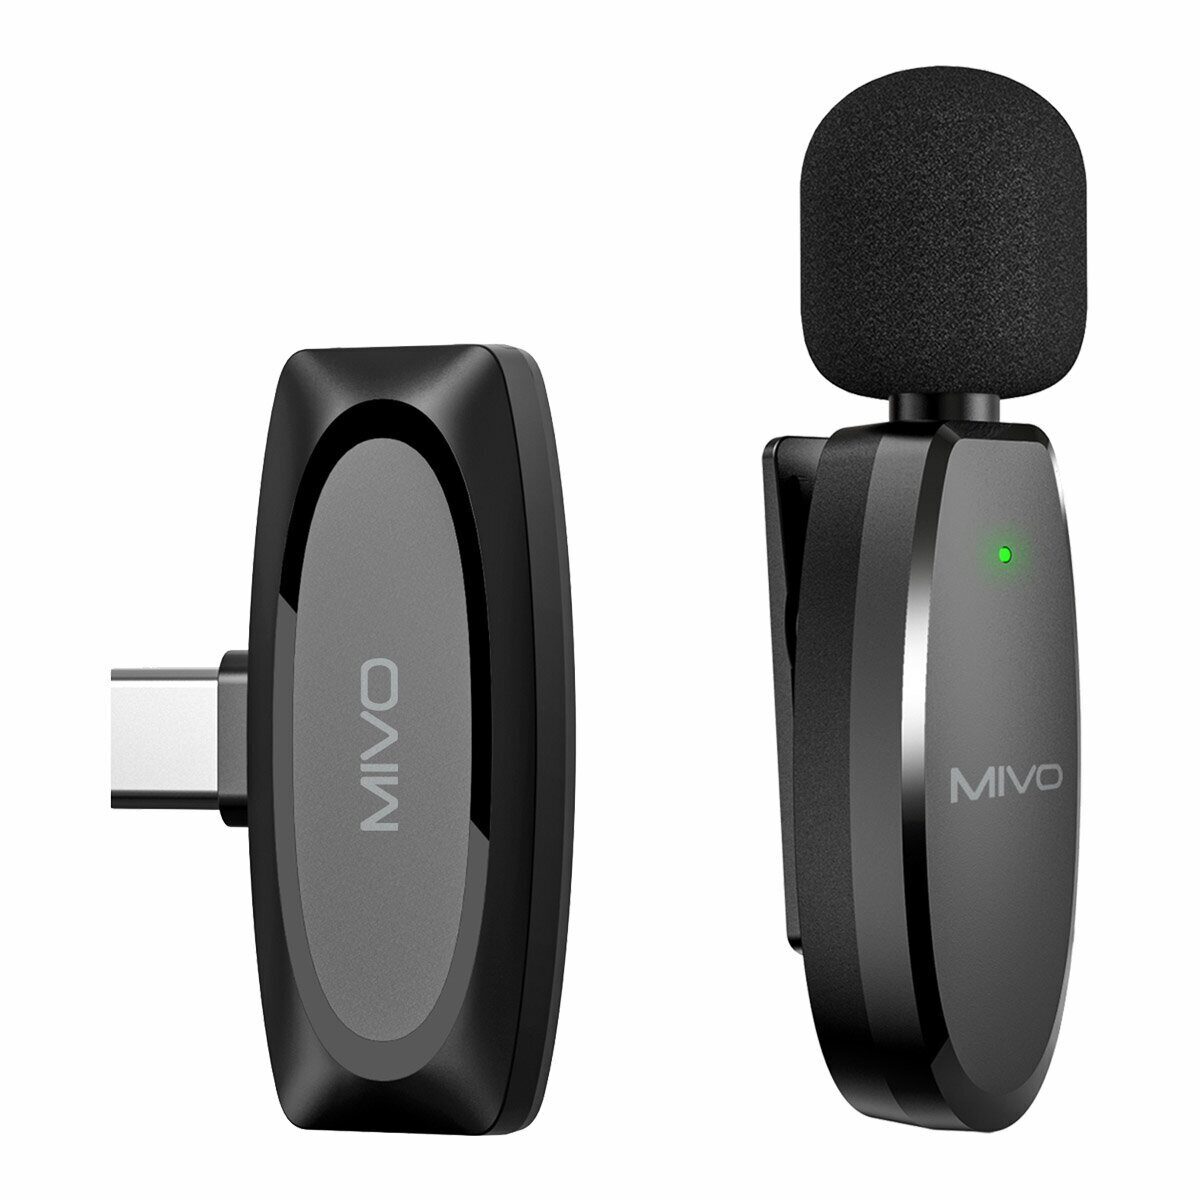 Беспроводной Bluetooth петличный микрофон Mivo MK-610T (Type-C) беспроводной bluetooth петличный микрофон mivo mk 620l lightning